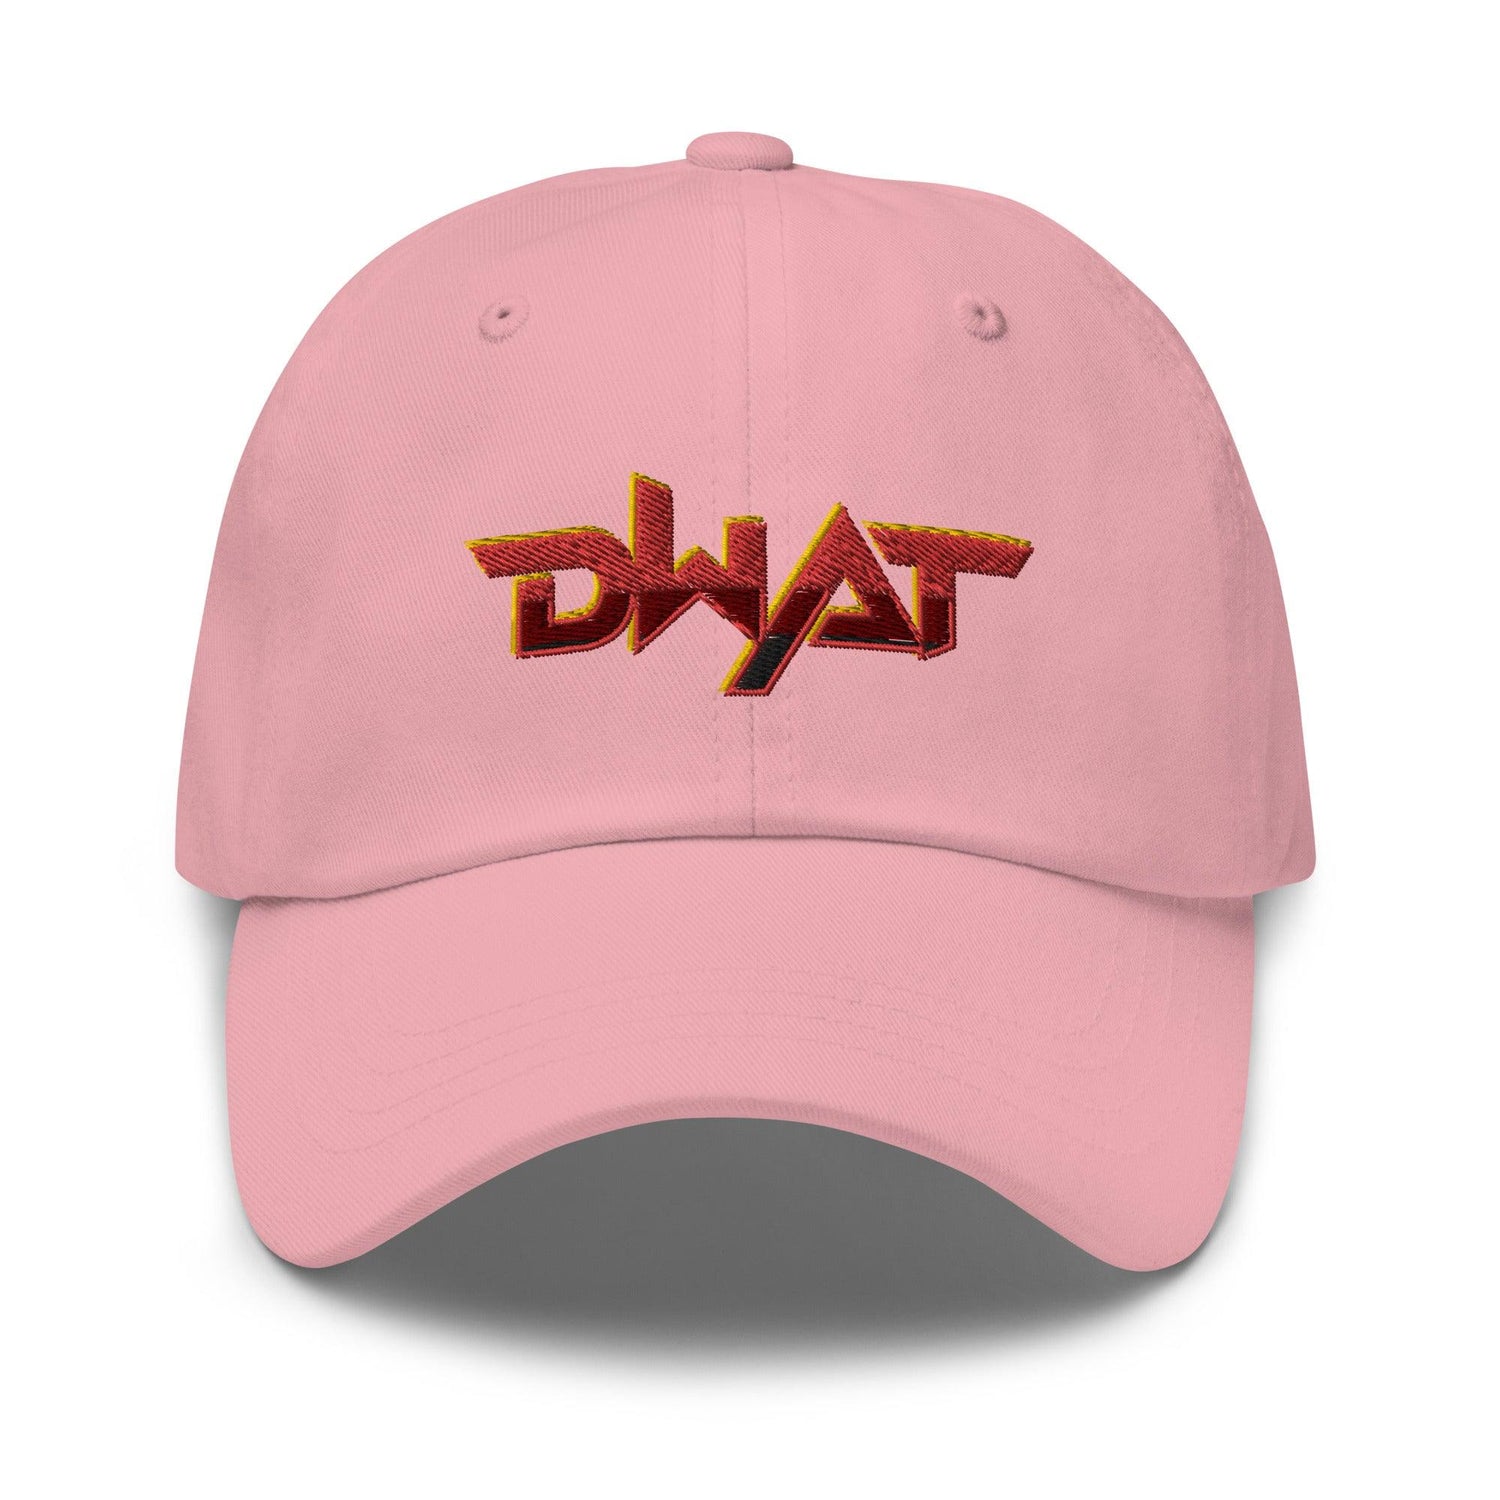 Demarion Watson "DWAT" hat - Fan Arch